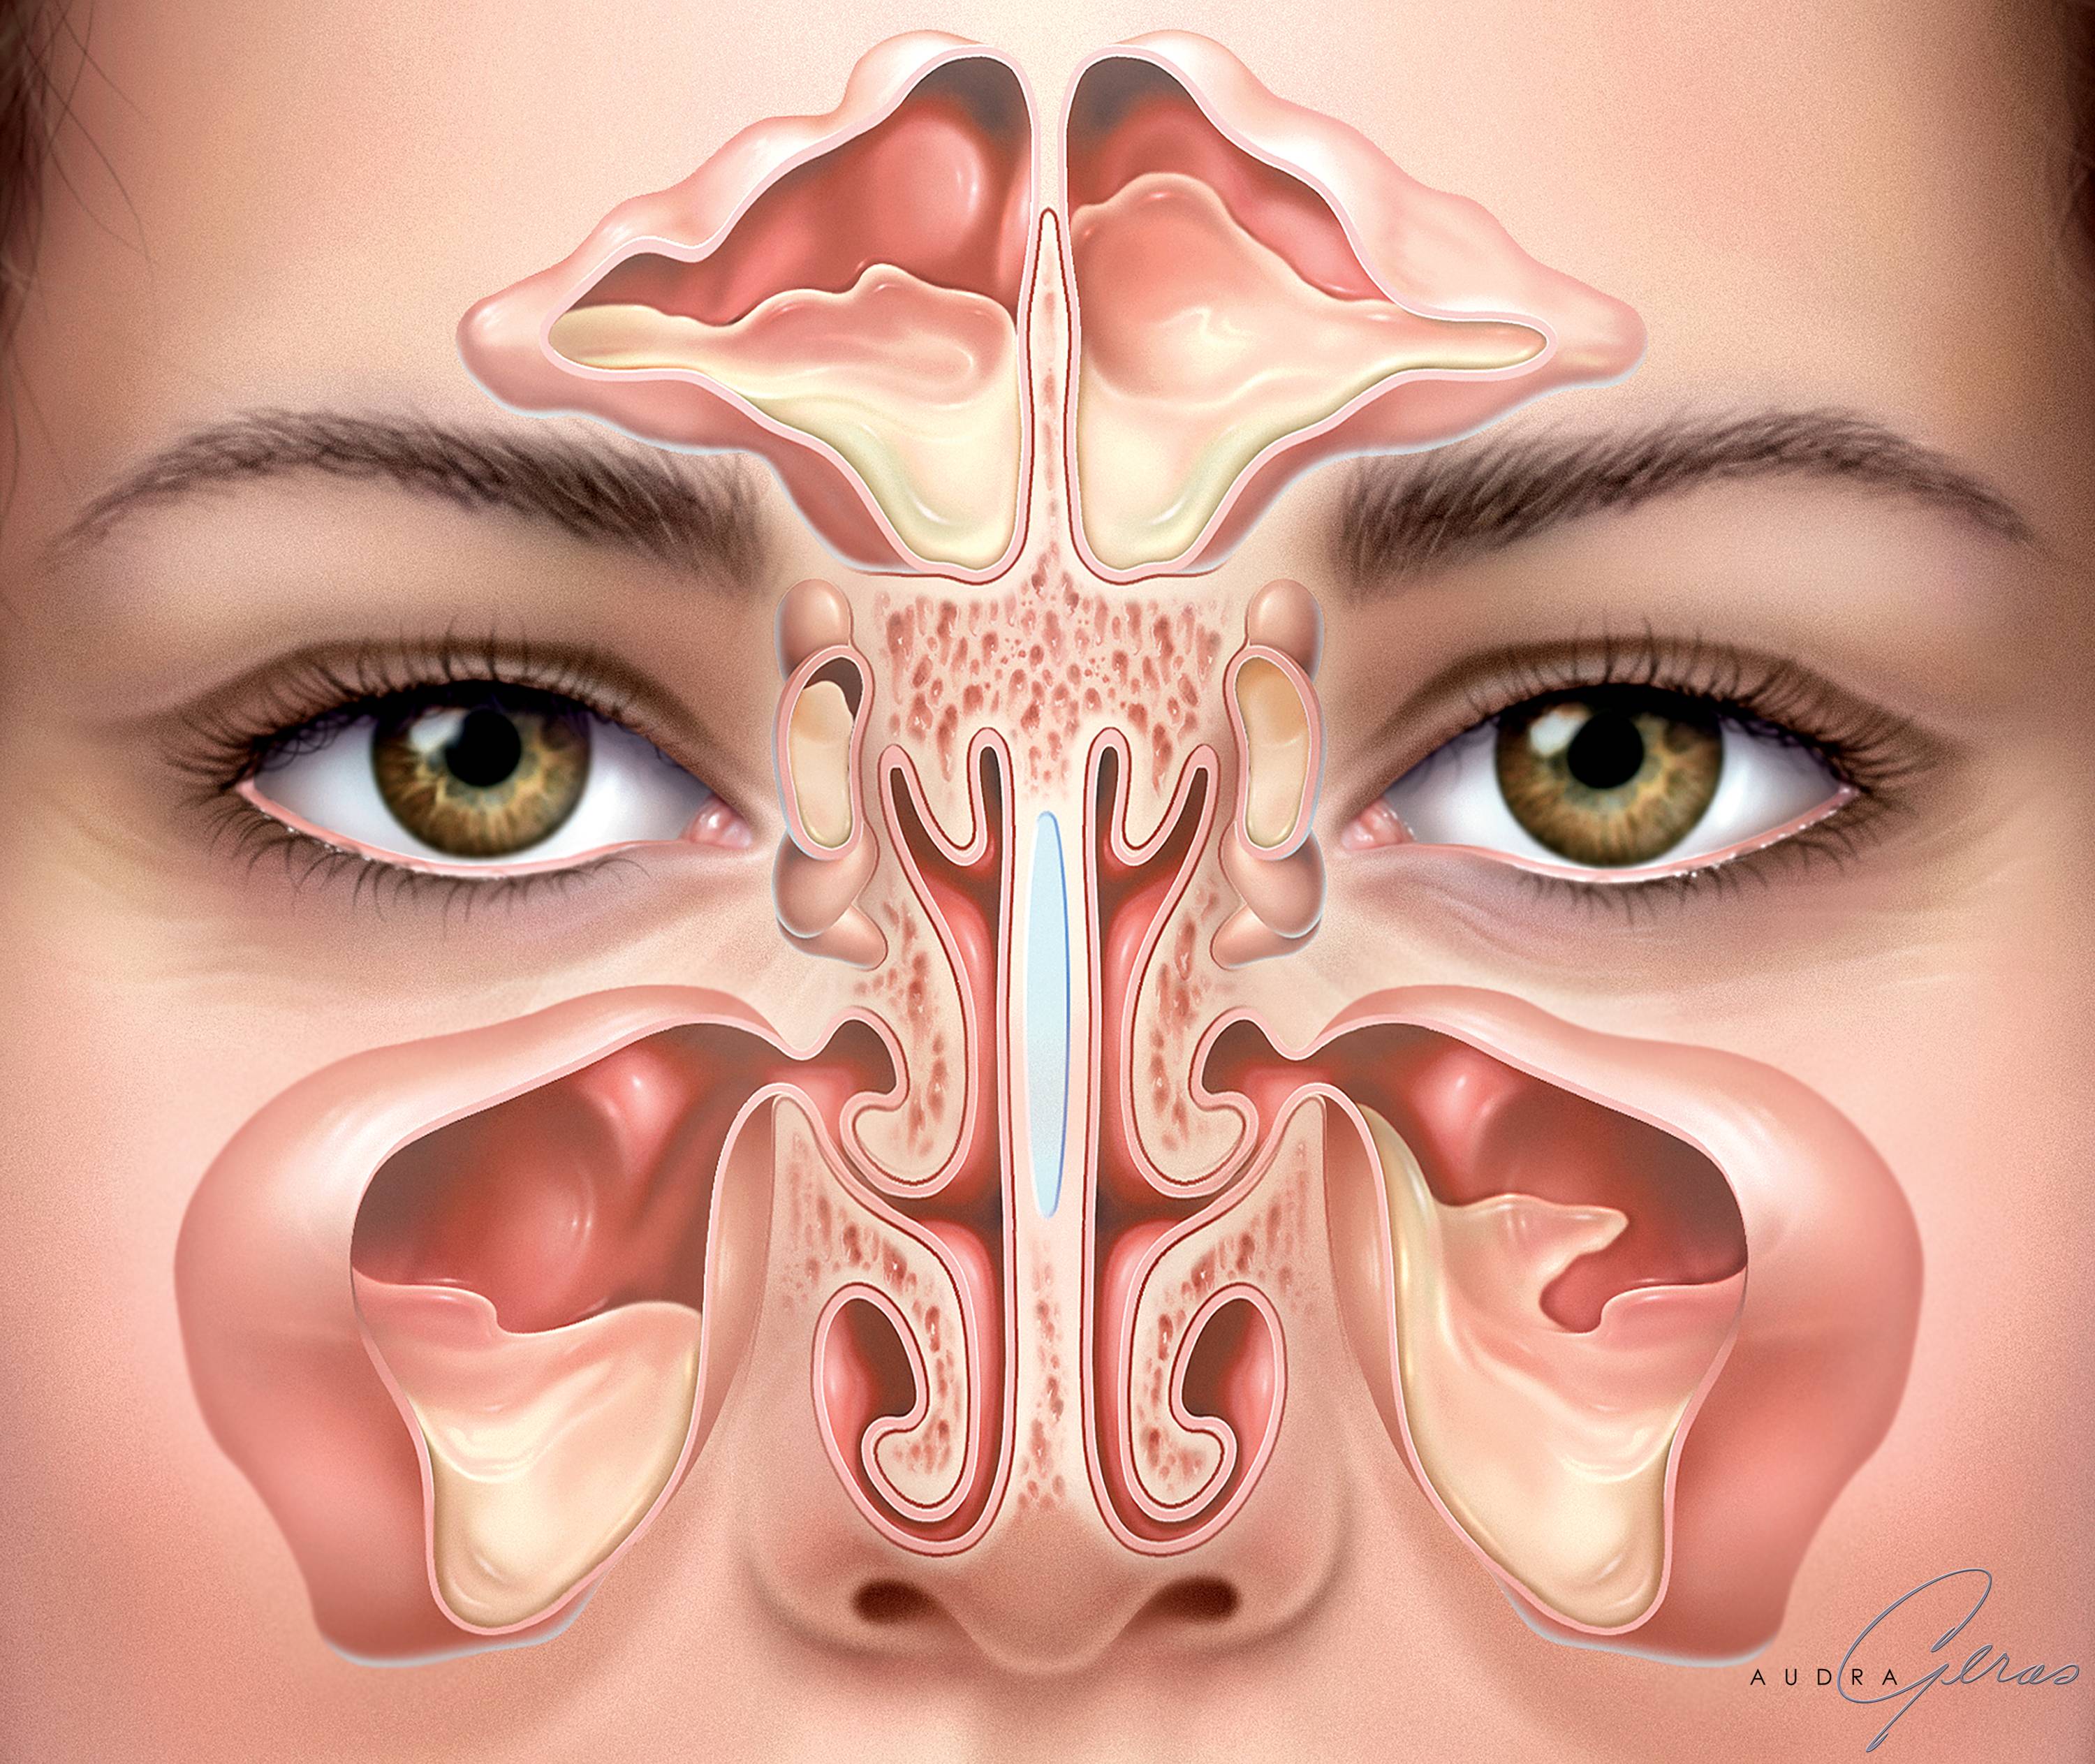 Синусит: симптомы и лечение у взрослых, описание болезни и рекомендации, какой использовать спрей для носа от синусита